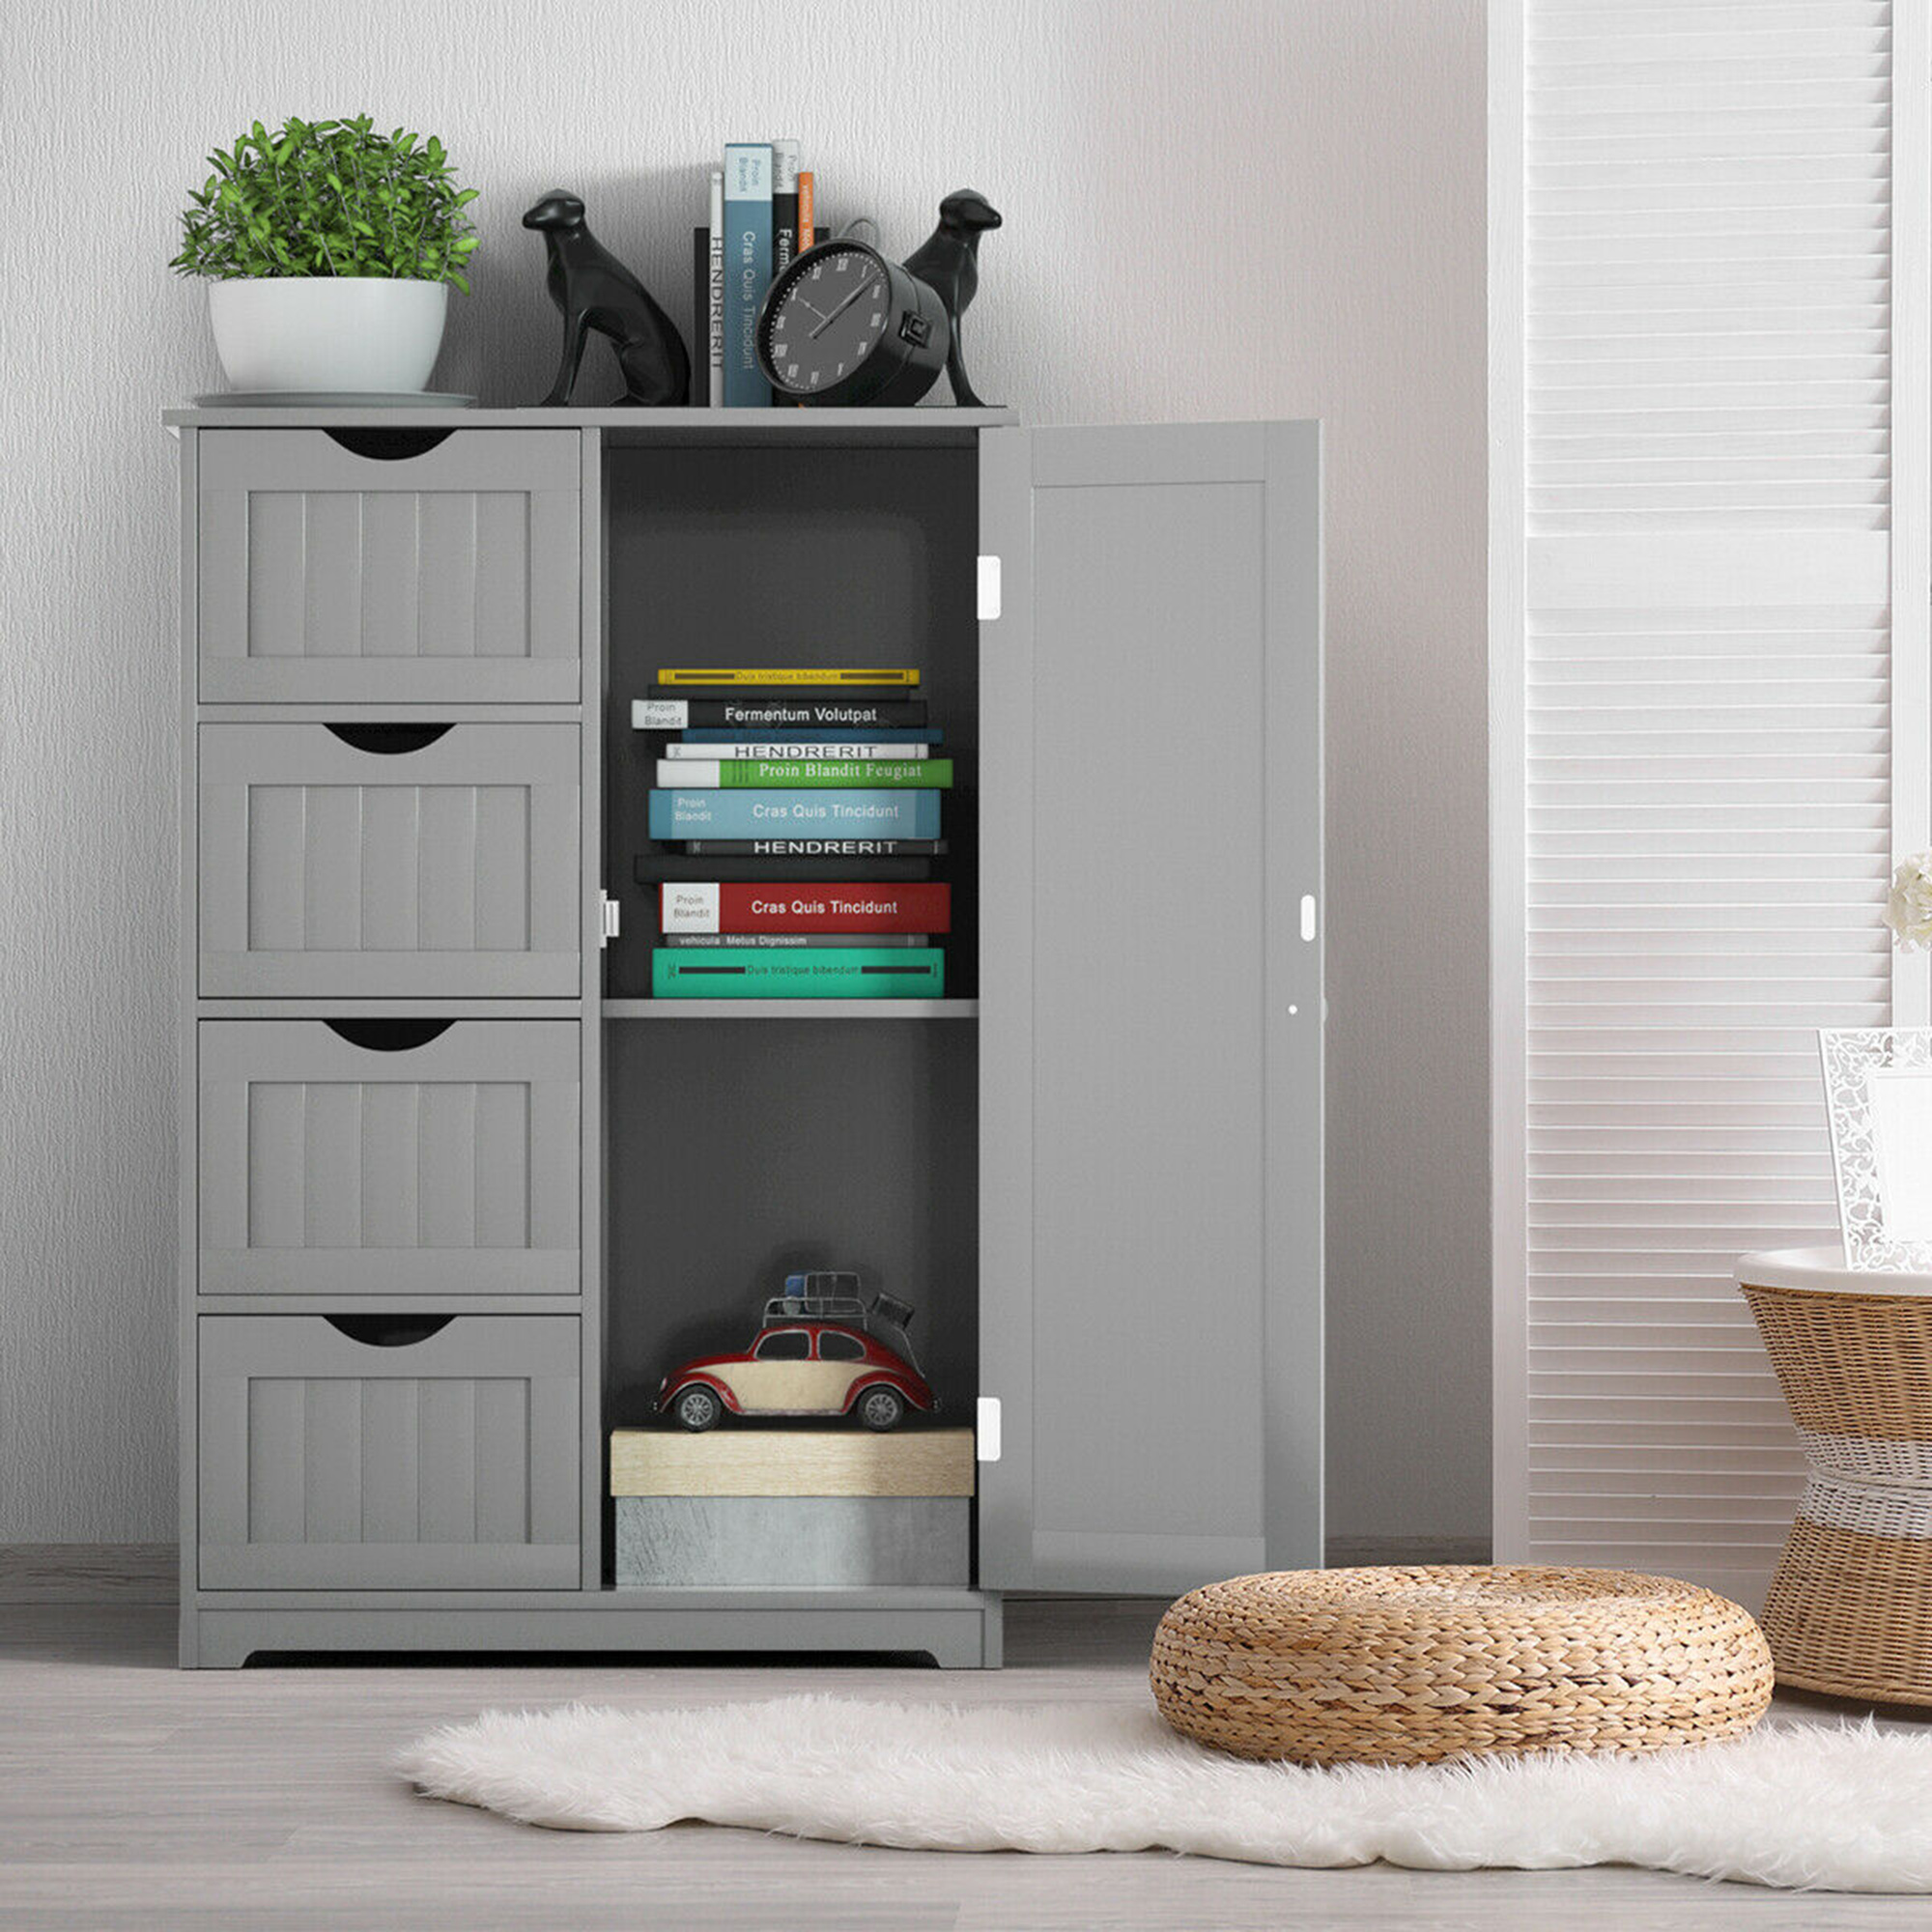 Gymax Bathroom Floor Cabinet Storage Organizer Cupboard w/ 4 Drawers Adjustable Shelf Grey - image 3 of 10